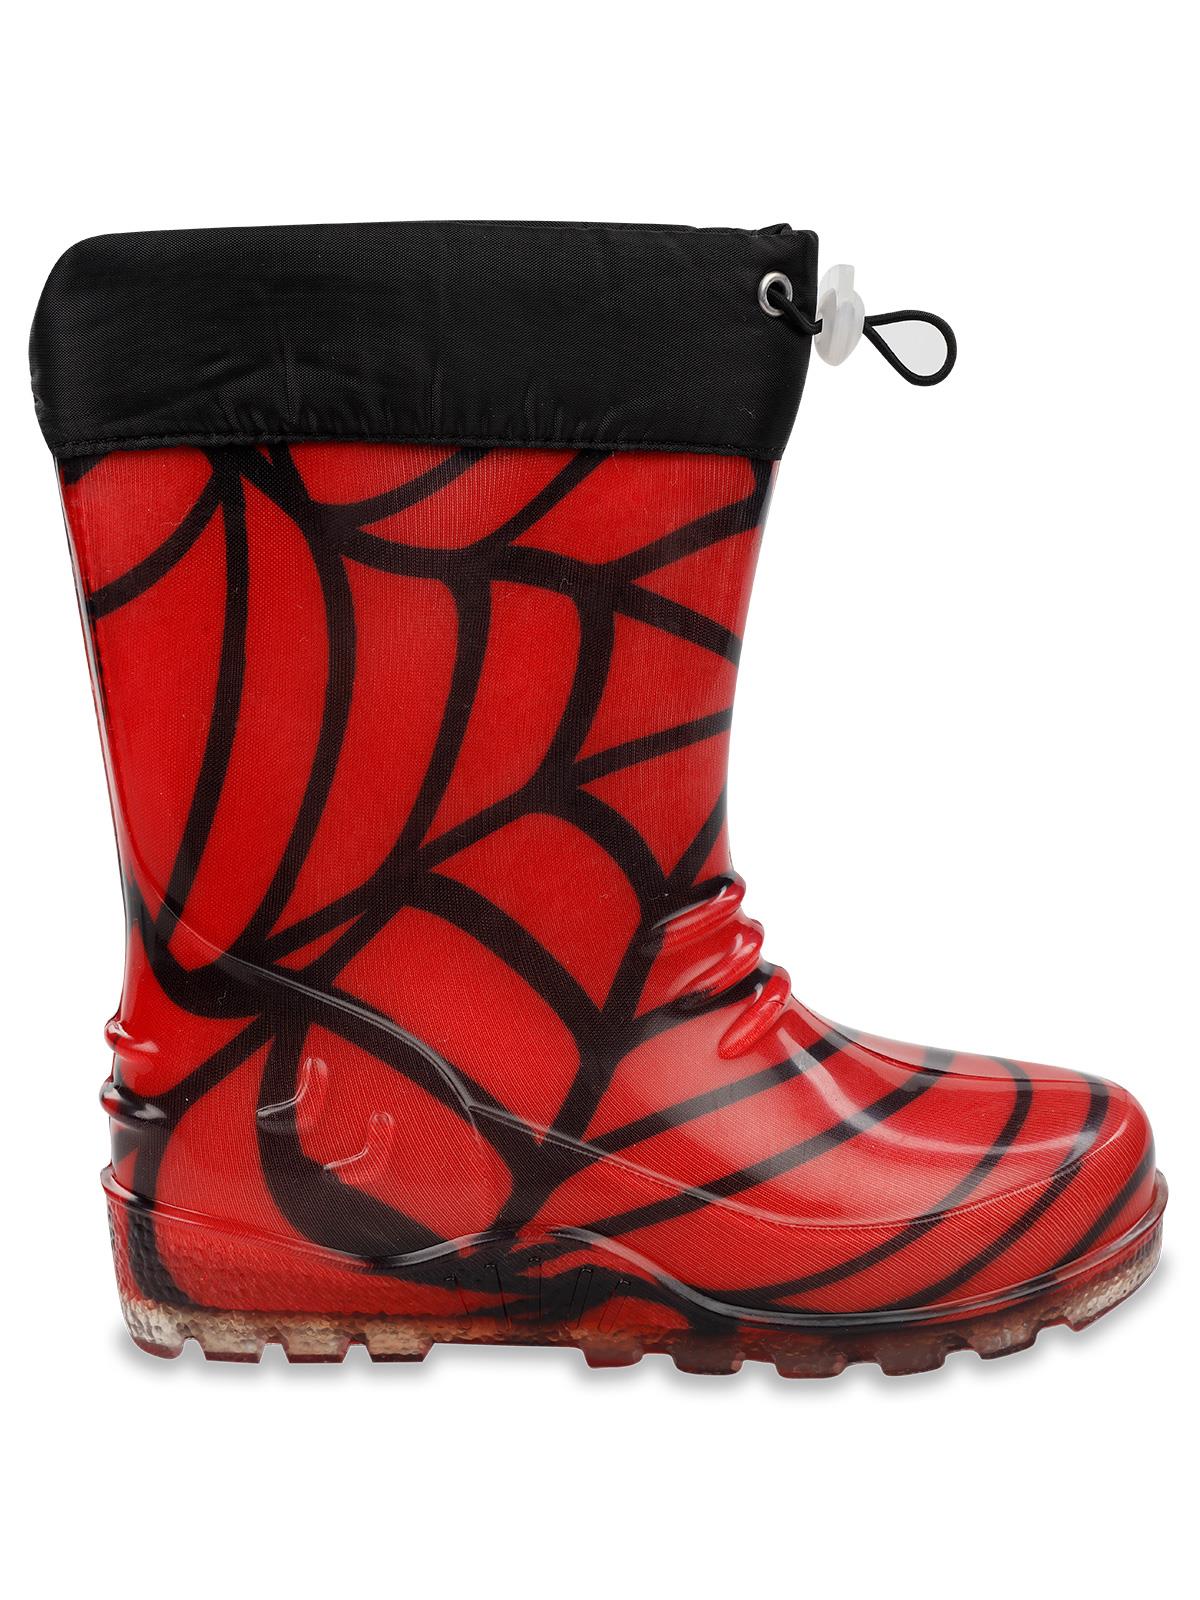 Boots Erkek Çocuk Çizme 30-36 Numara Kırmızı